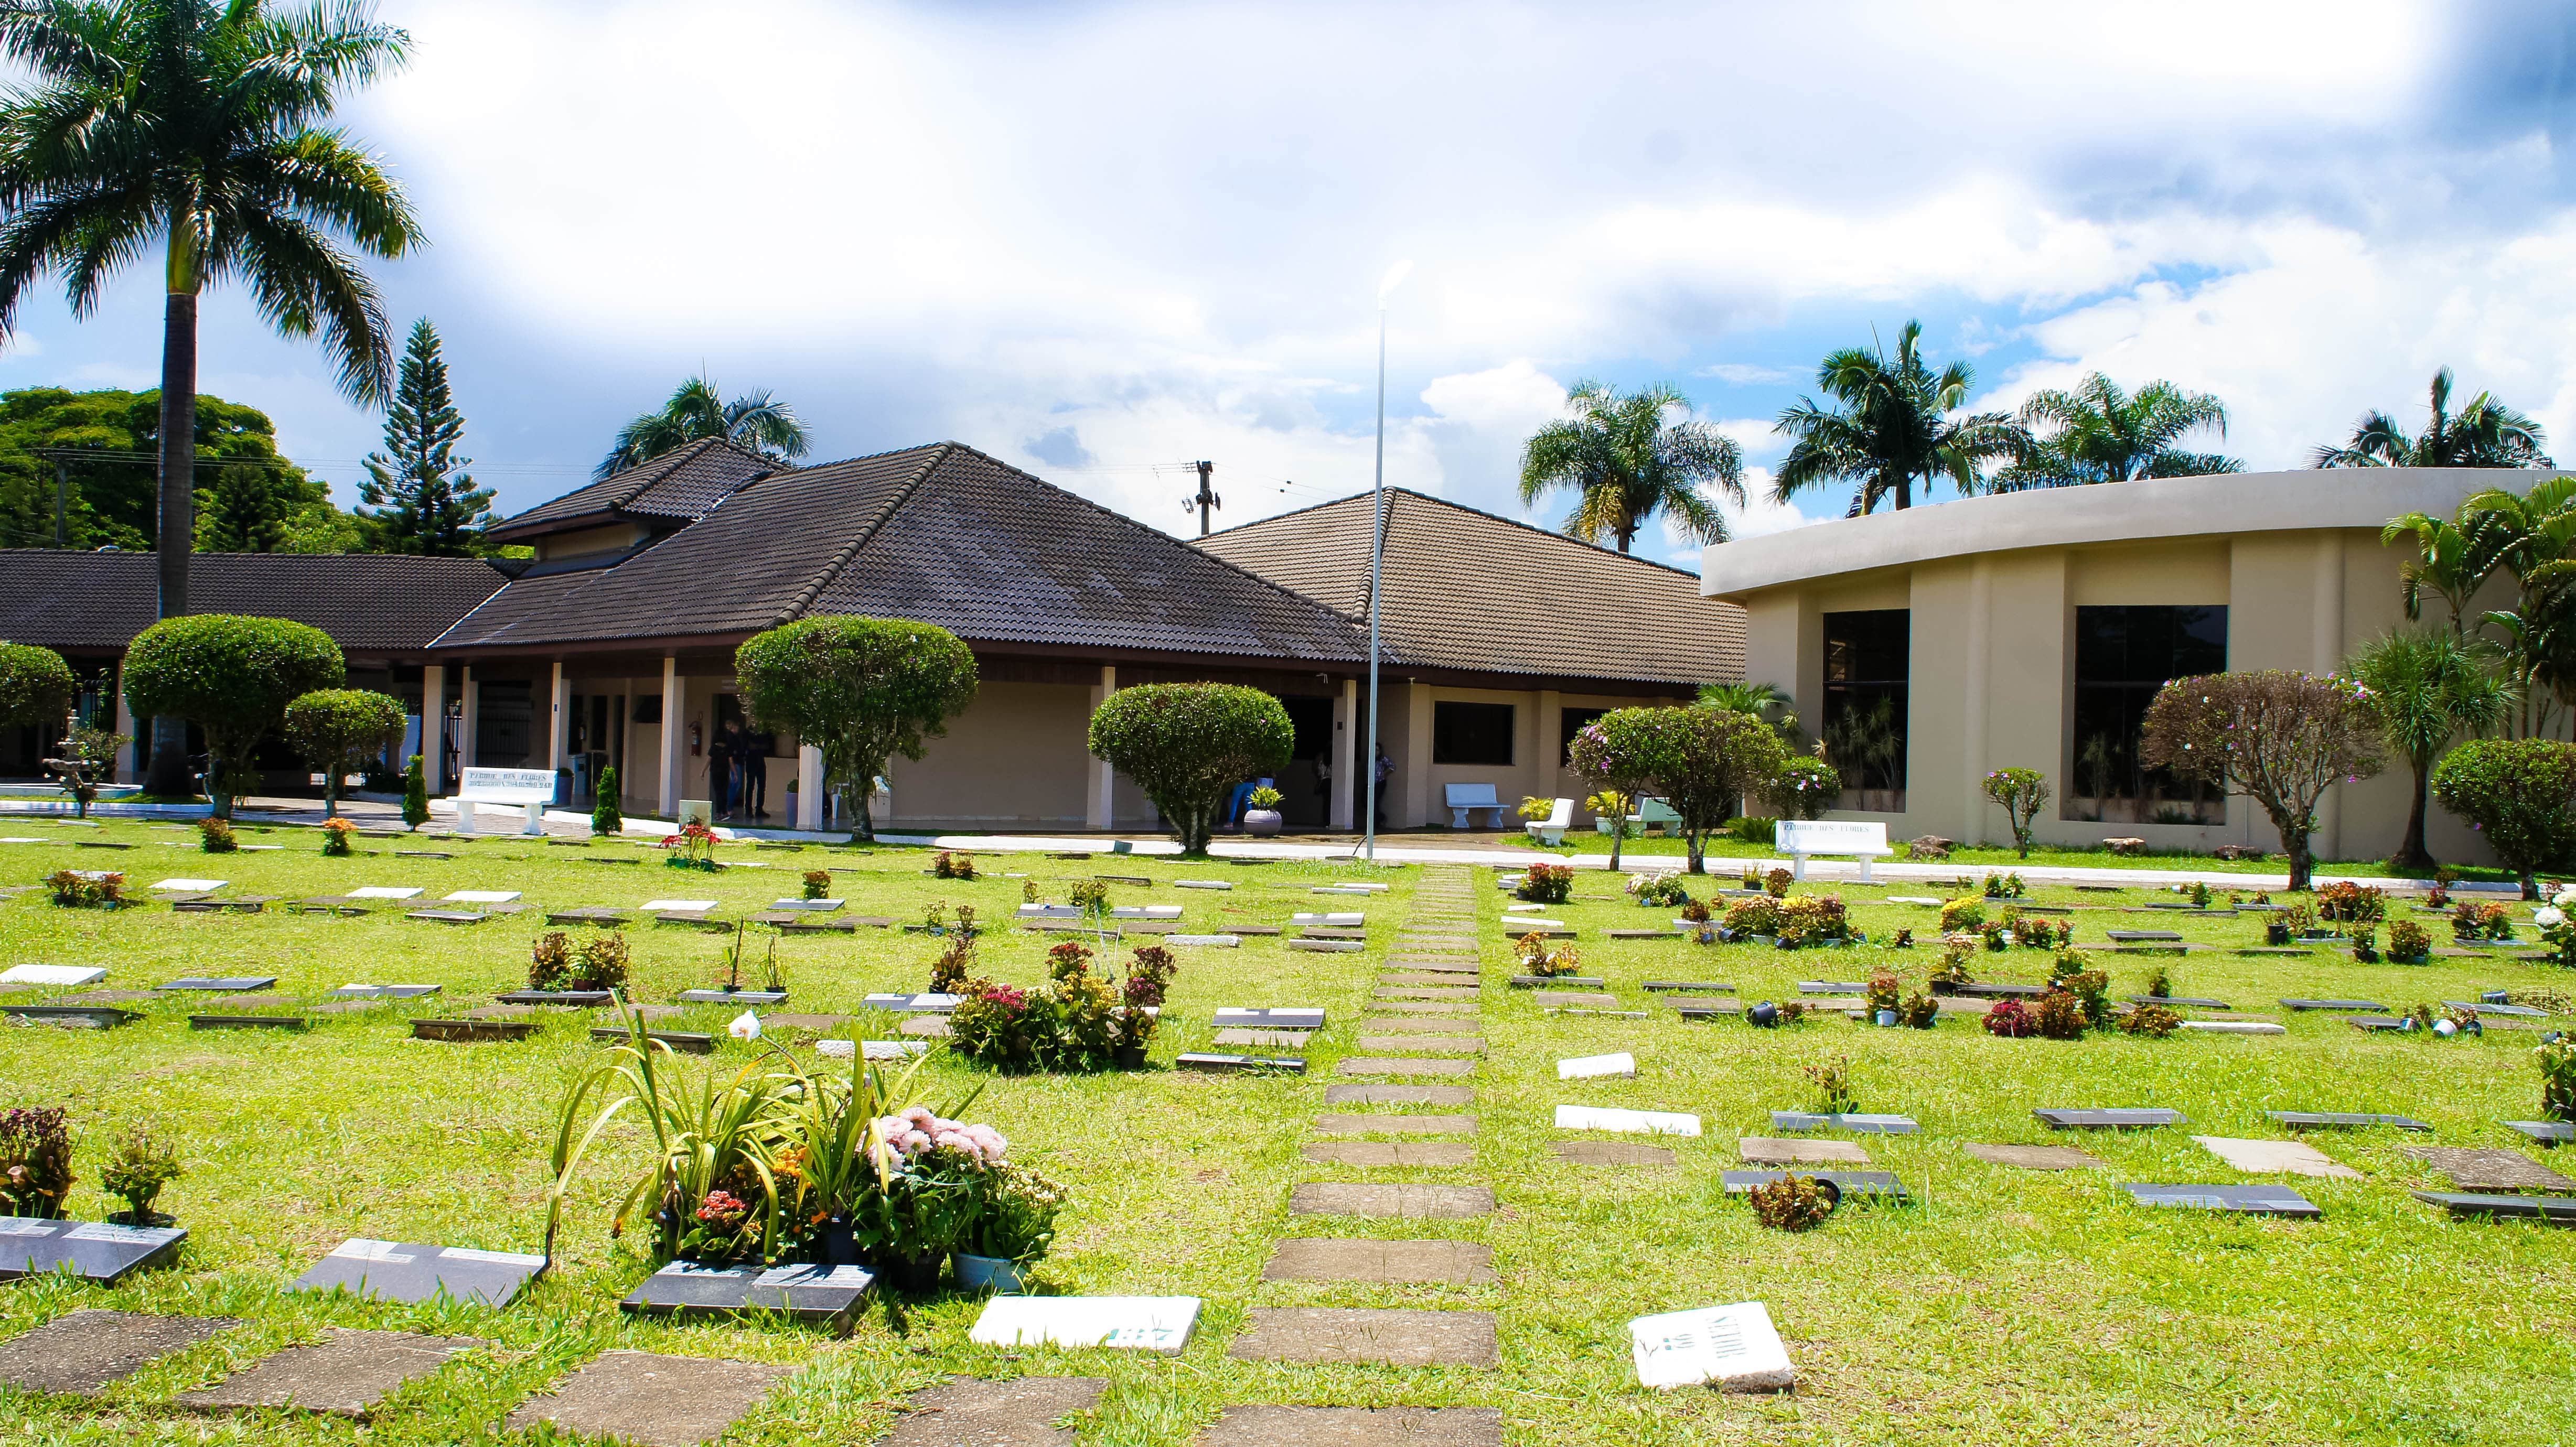 Ambiente de jazigos do cemitério e crematório Parque das Flores situado em São José dos Campos, o jazigo é um dos destinos para as cinzas da cremação 